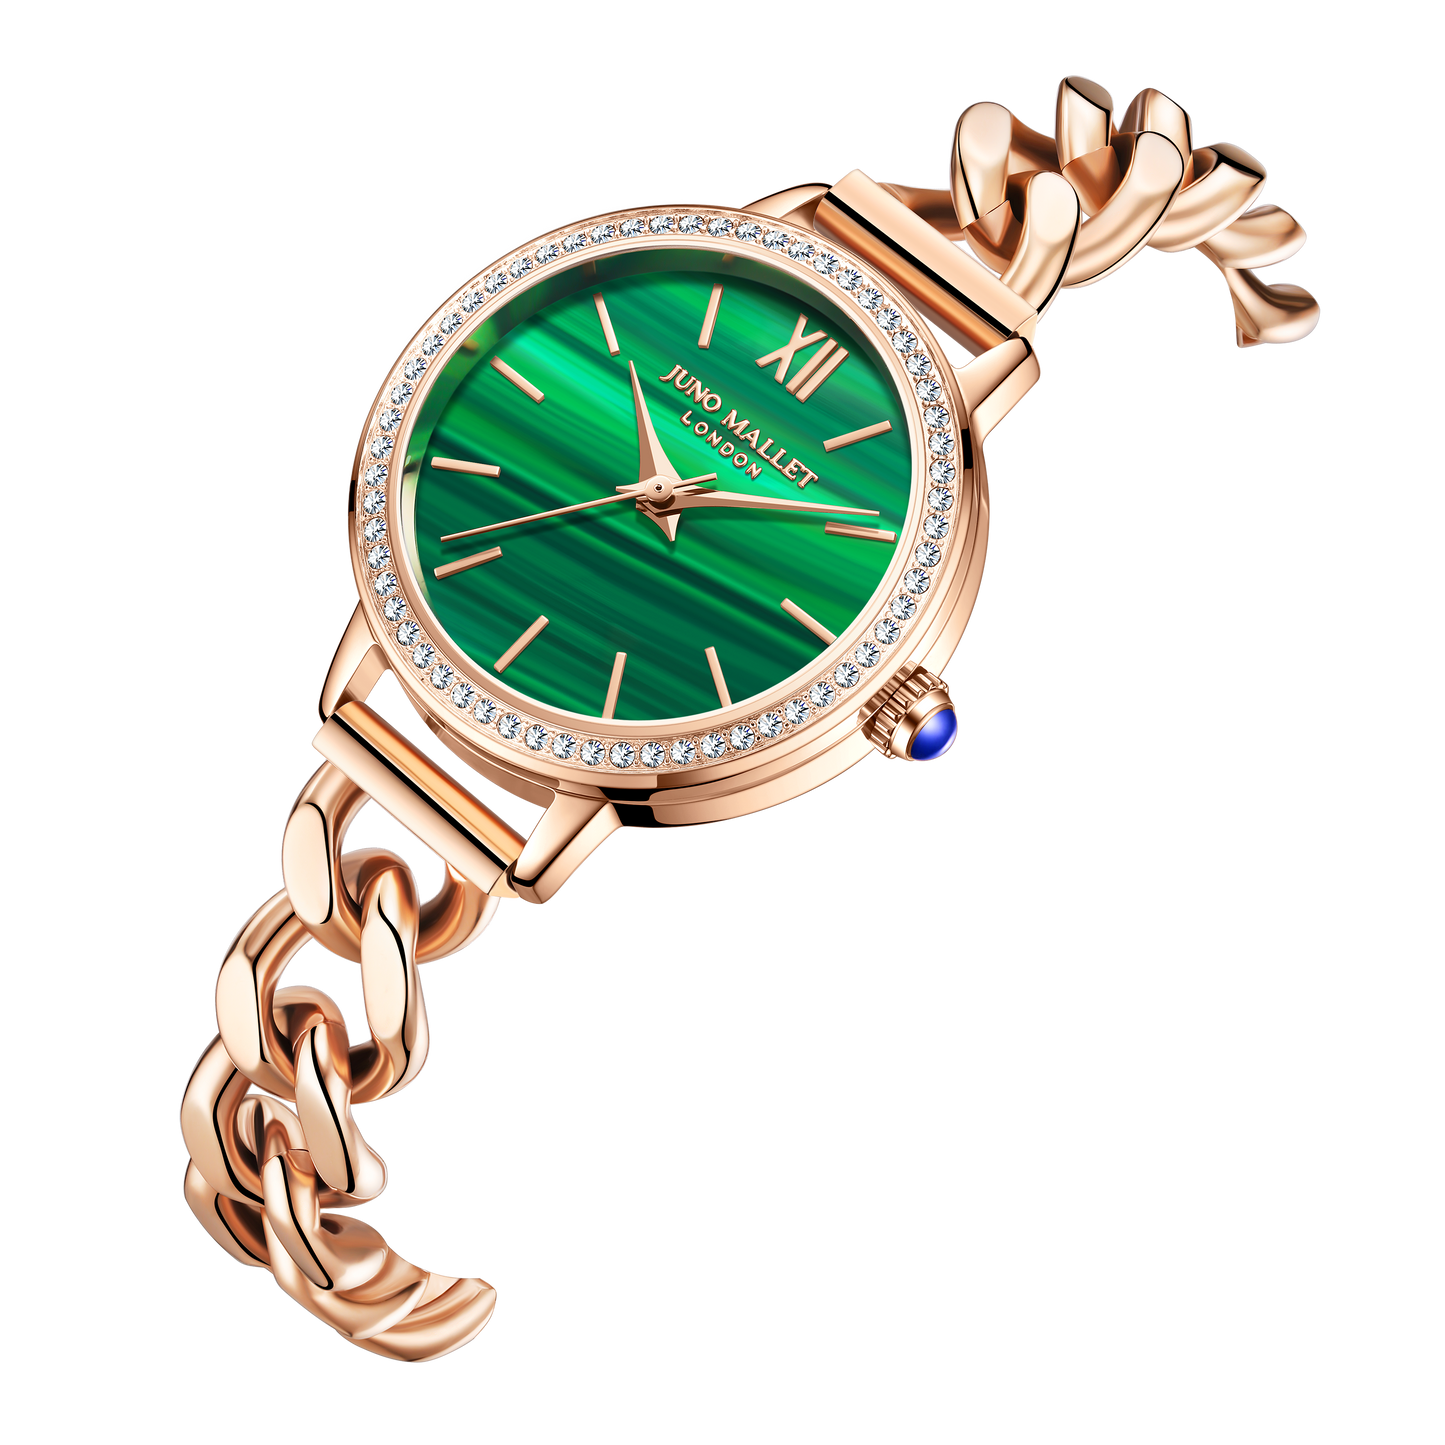 美人魚珍珠手錶與她的第二個錶盤復古孔雀石“臉”|浪漫奢華套餐 |給她的禮物